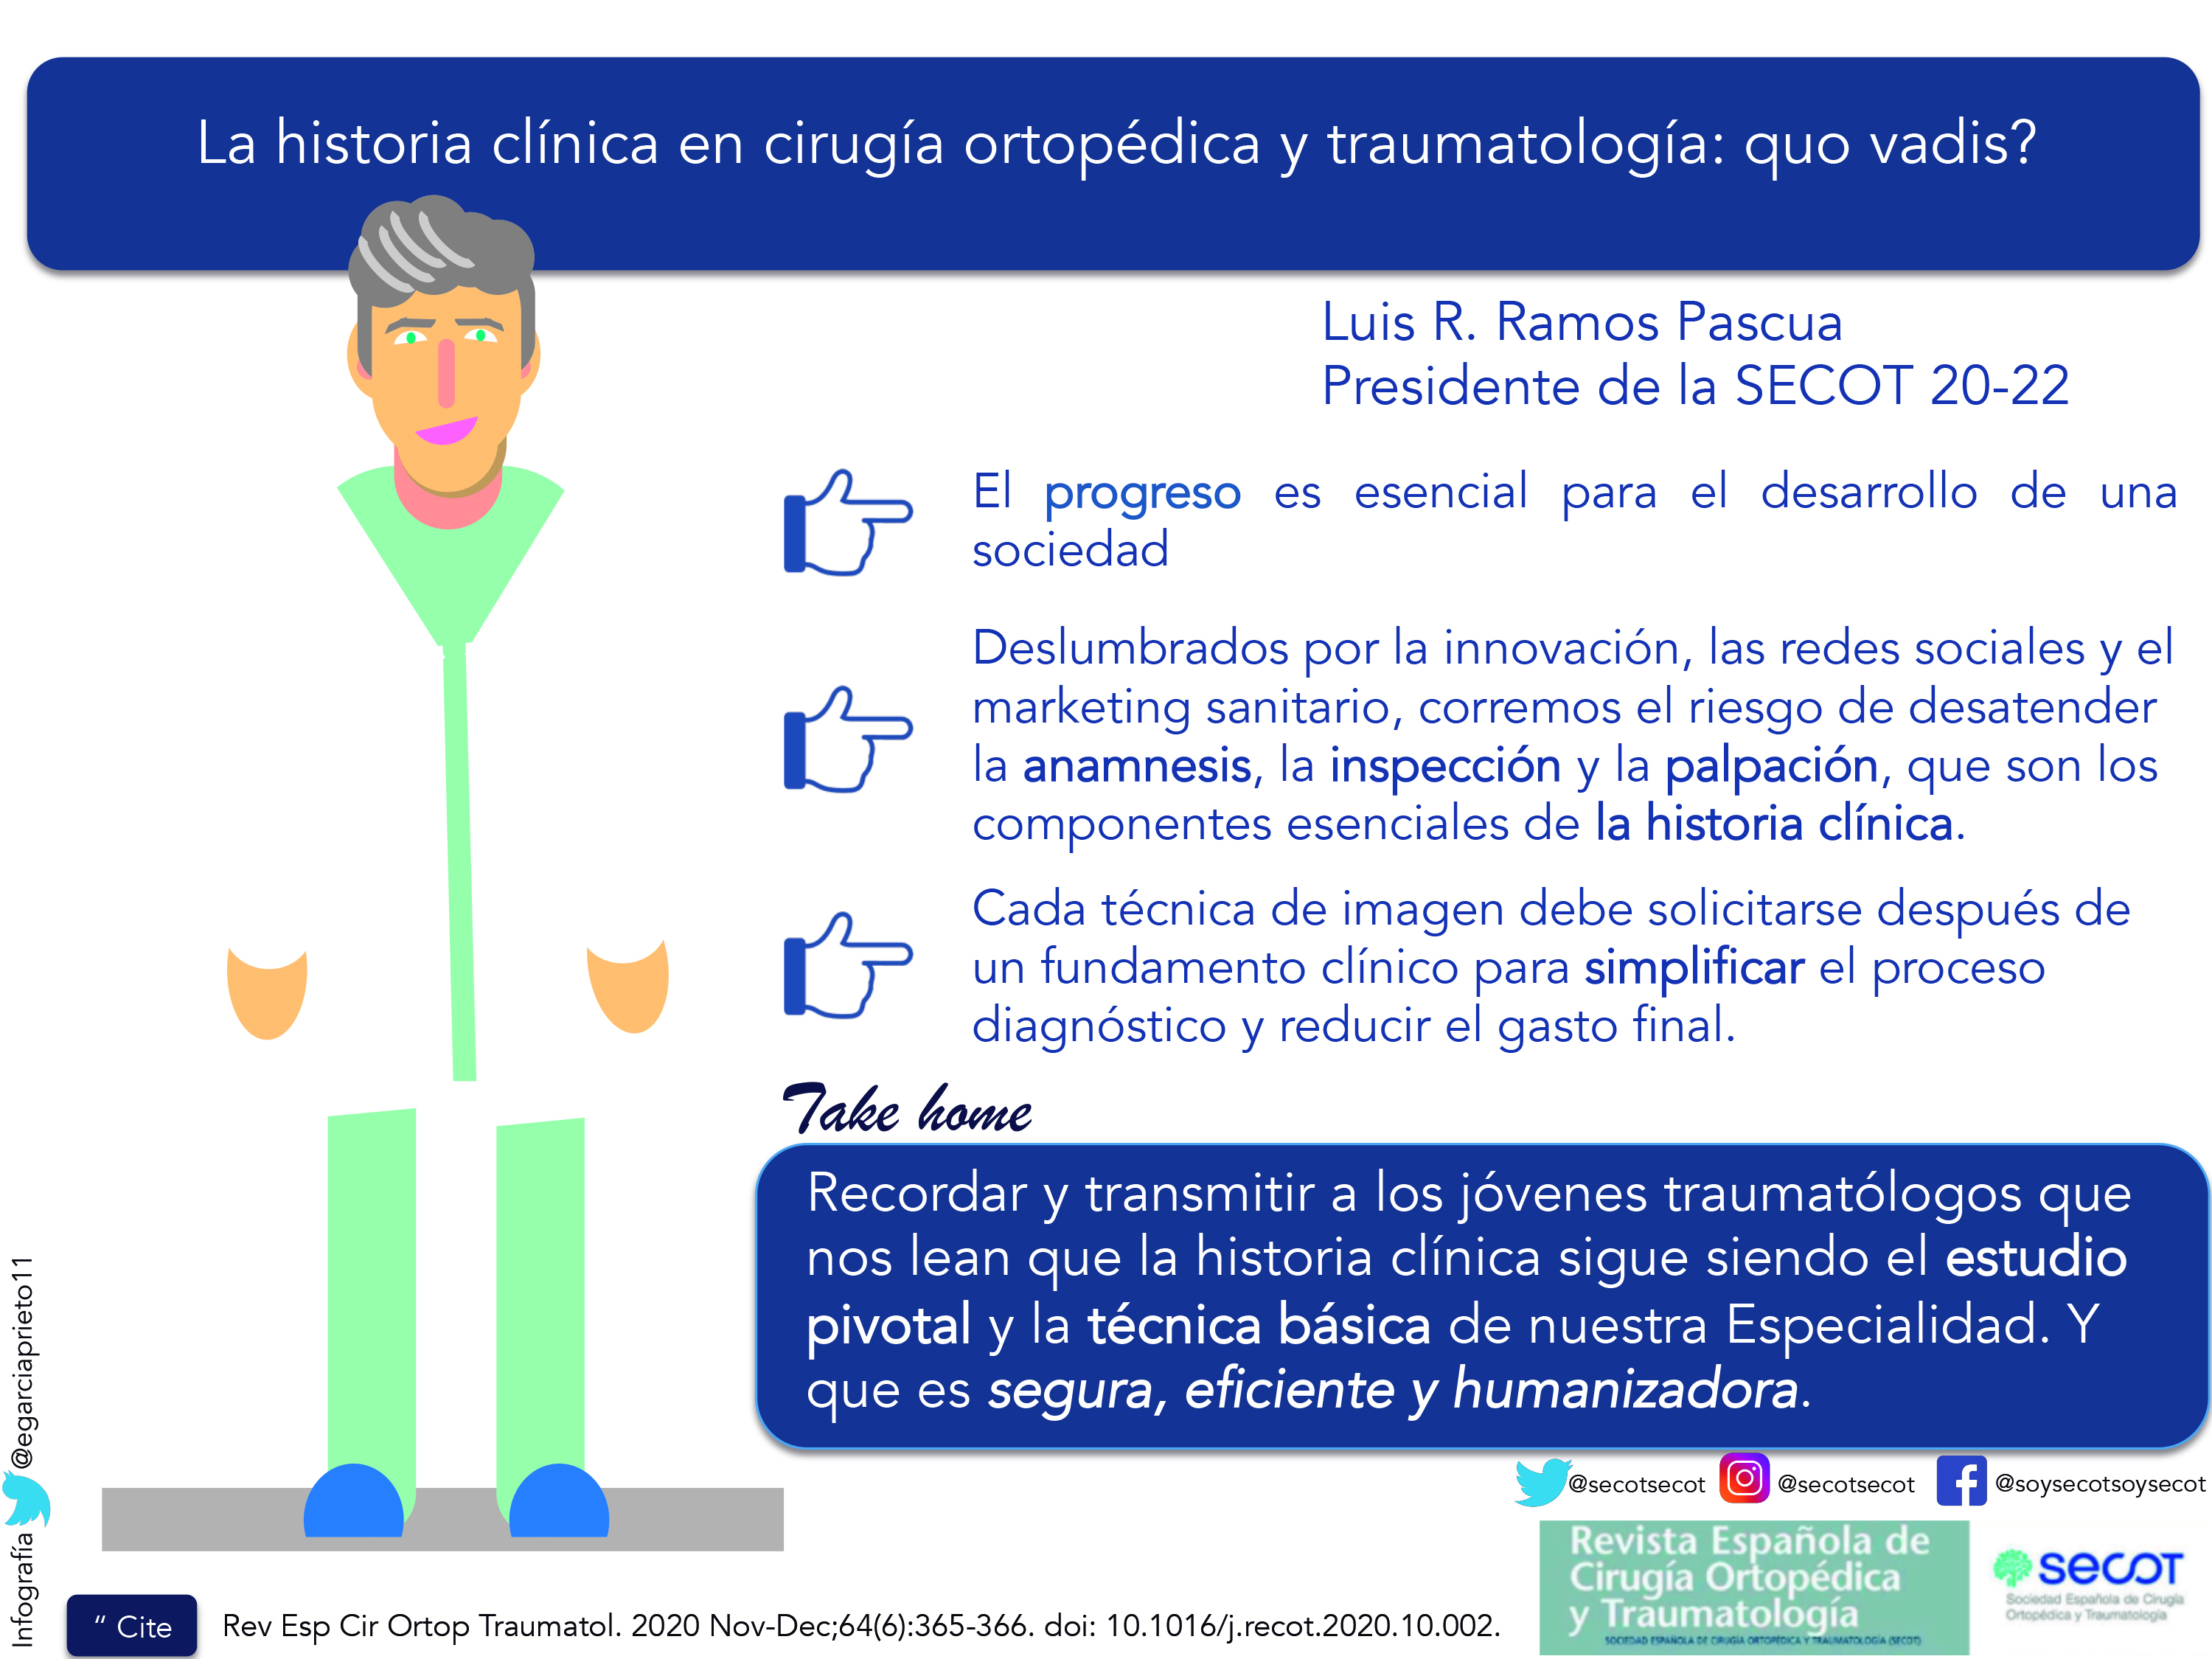 La historia clínica en cirugía ortopédica y traumatología: quo vadis? | Revista Española de Cirugía Ortopédica y Traumatología (elsevier.es)